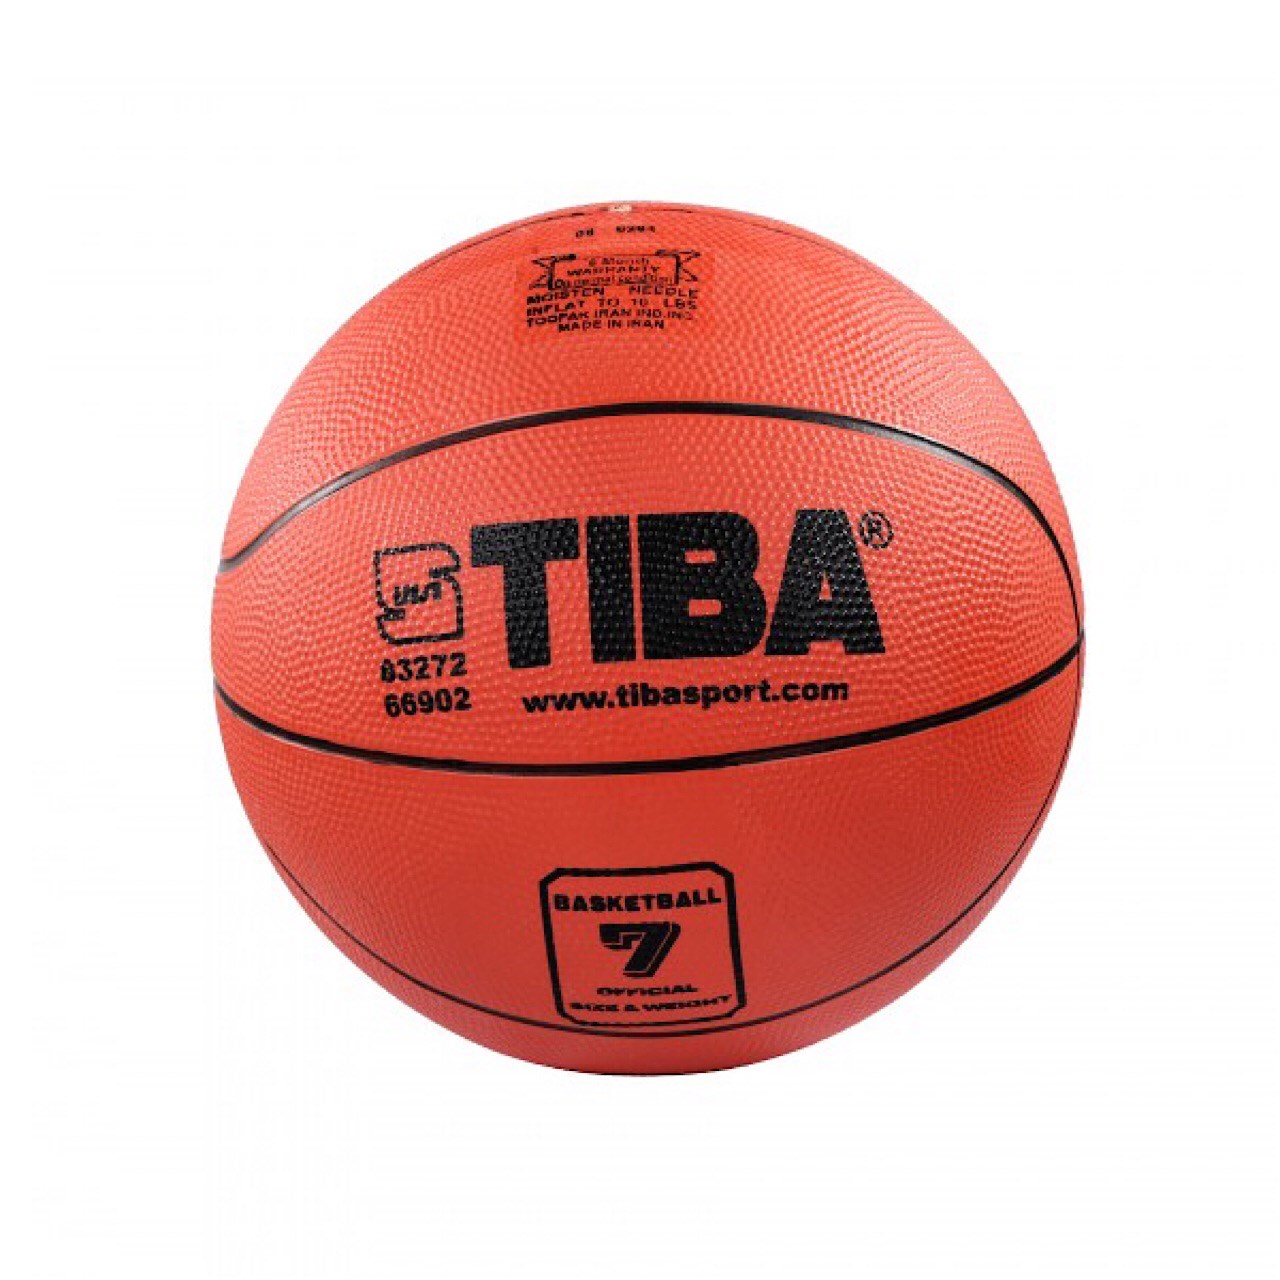 توپ بسکتبال تیبا مدل 7 سایز 5